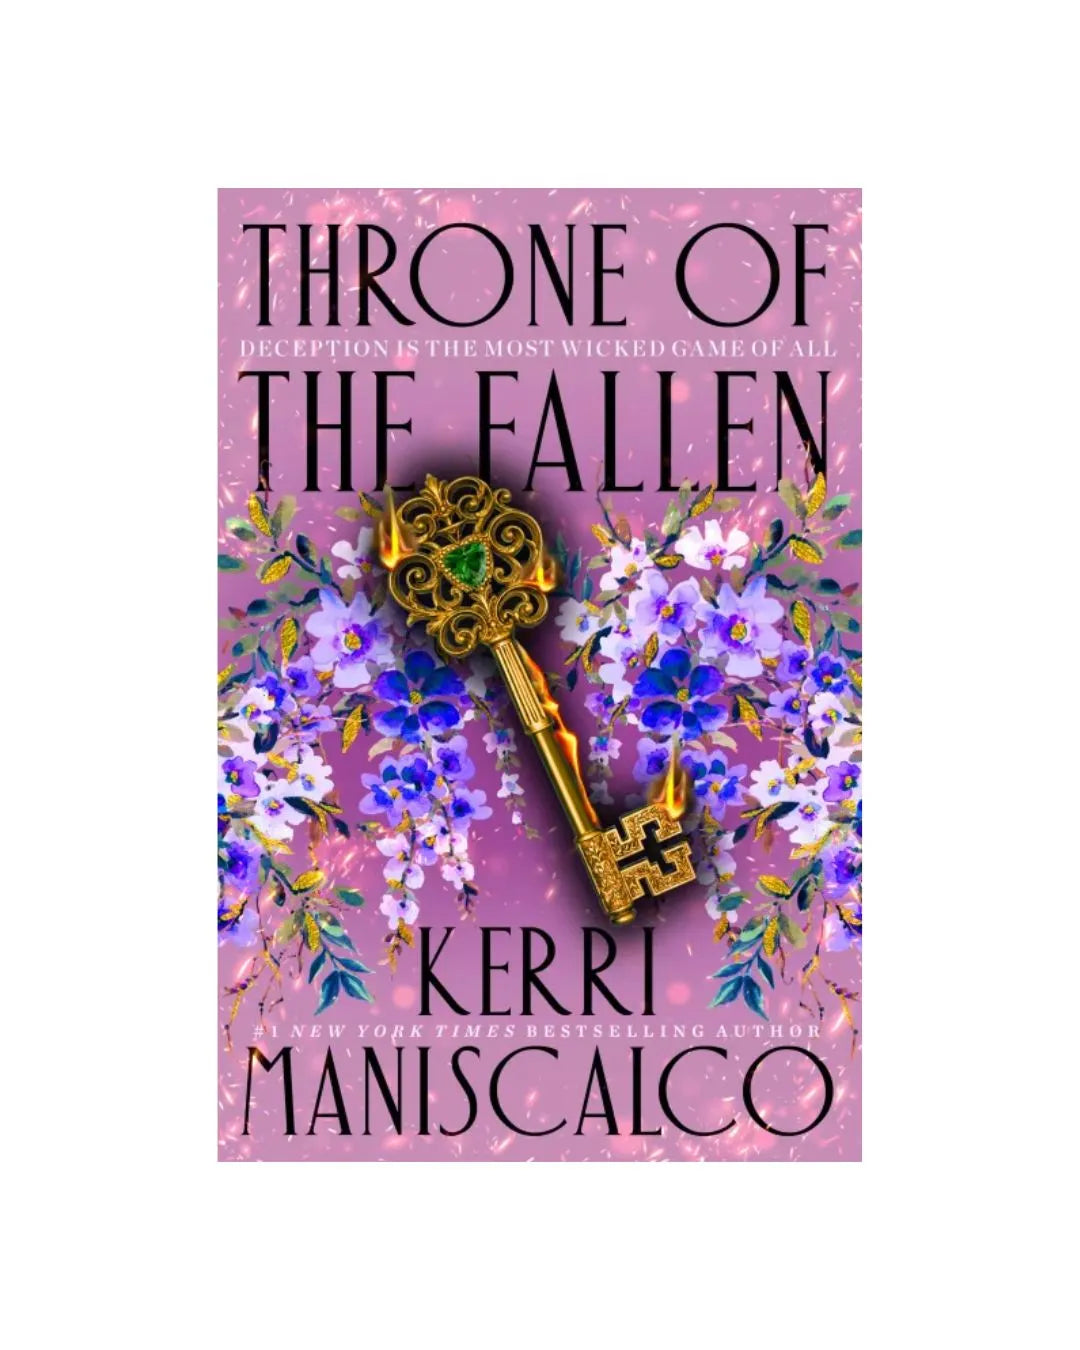 buy throne of the fallen online - OnlineBooksOutlet